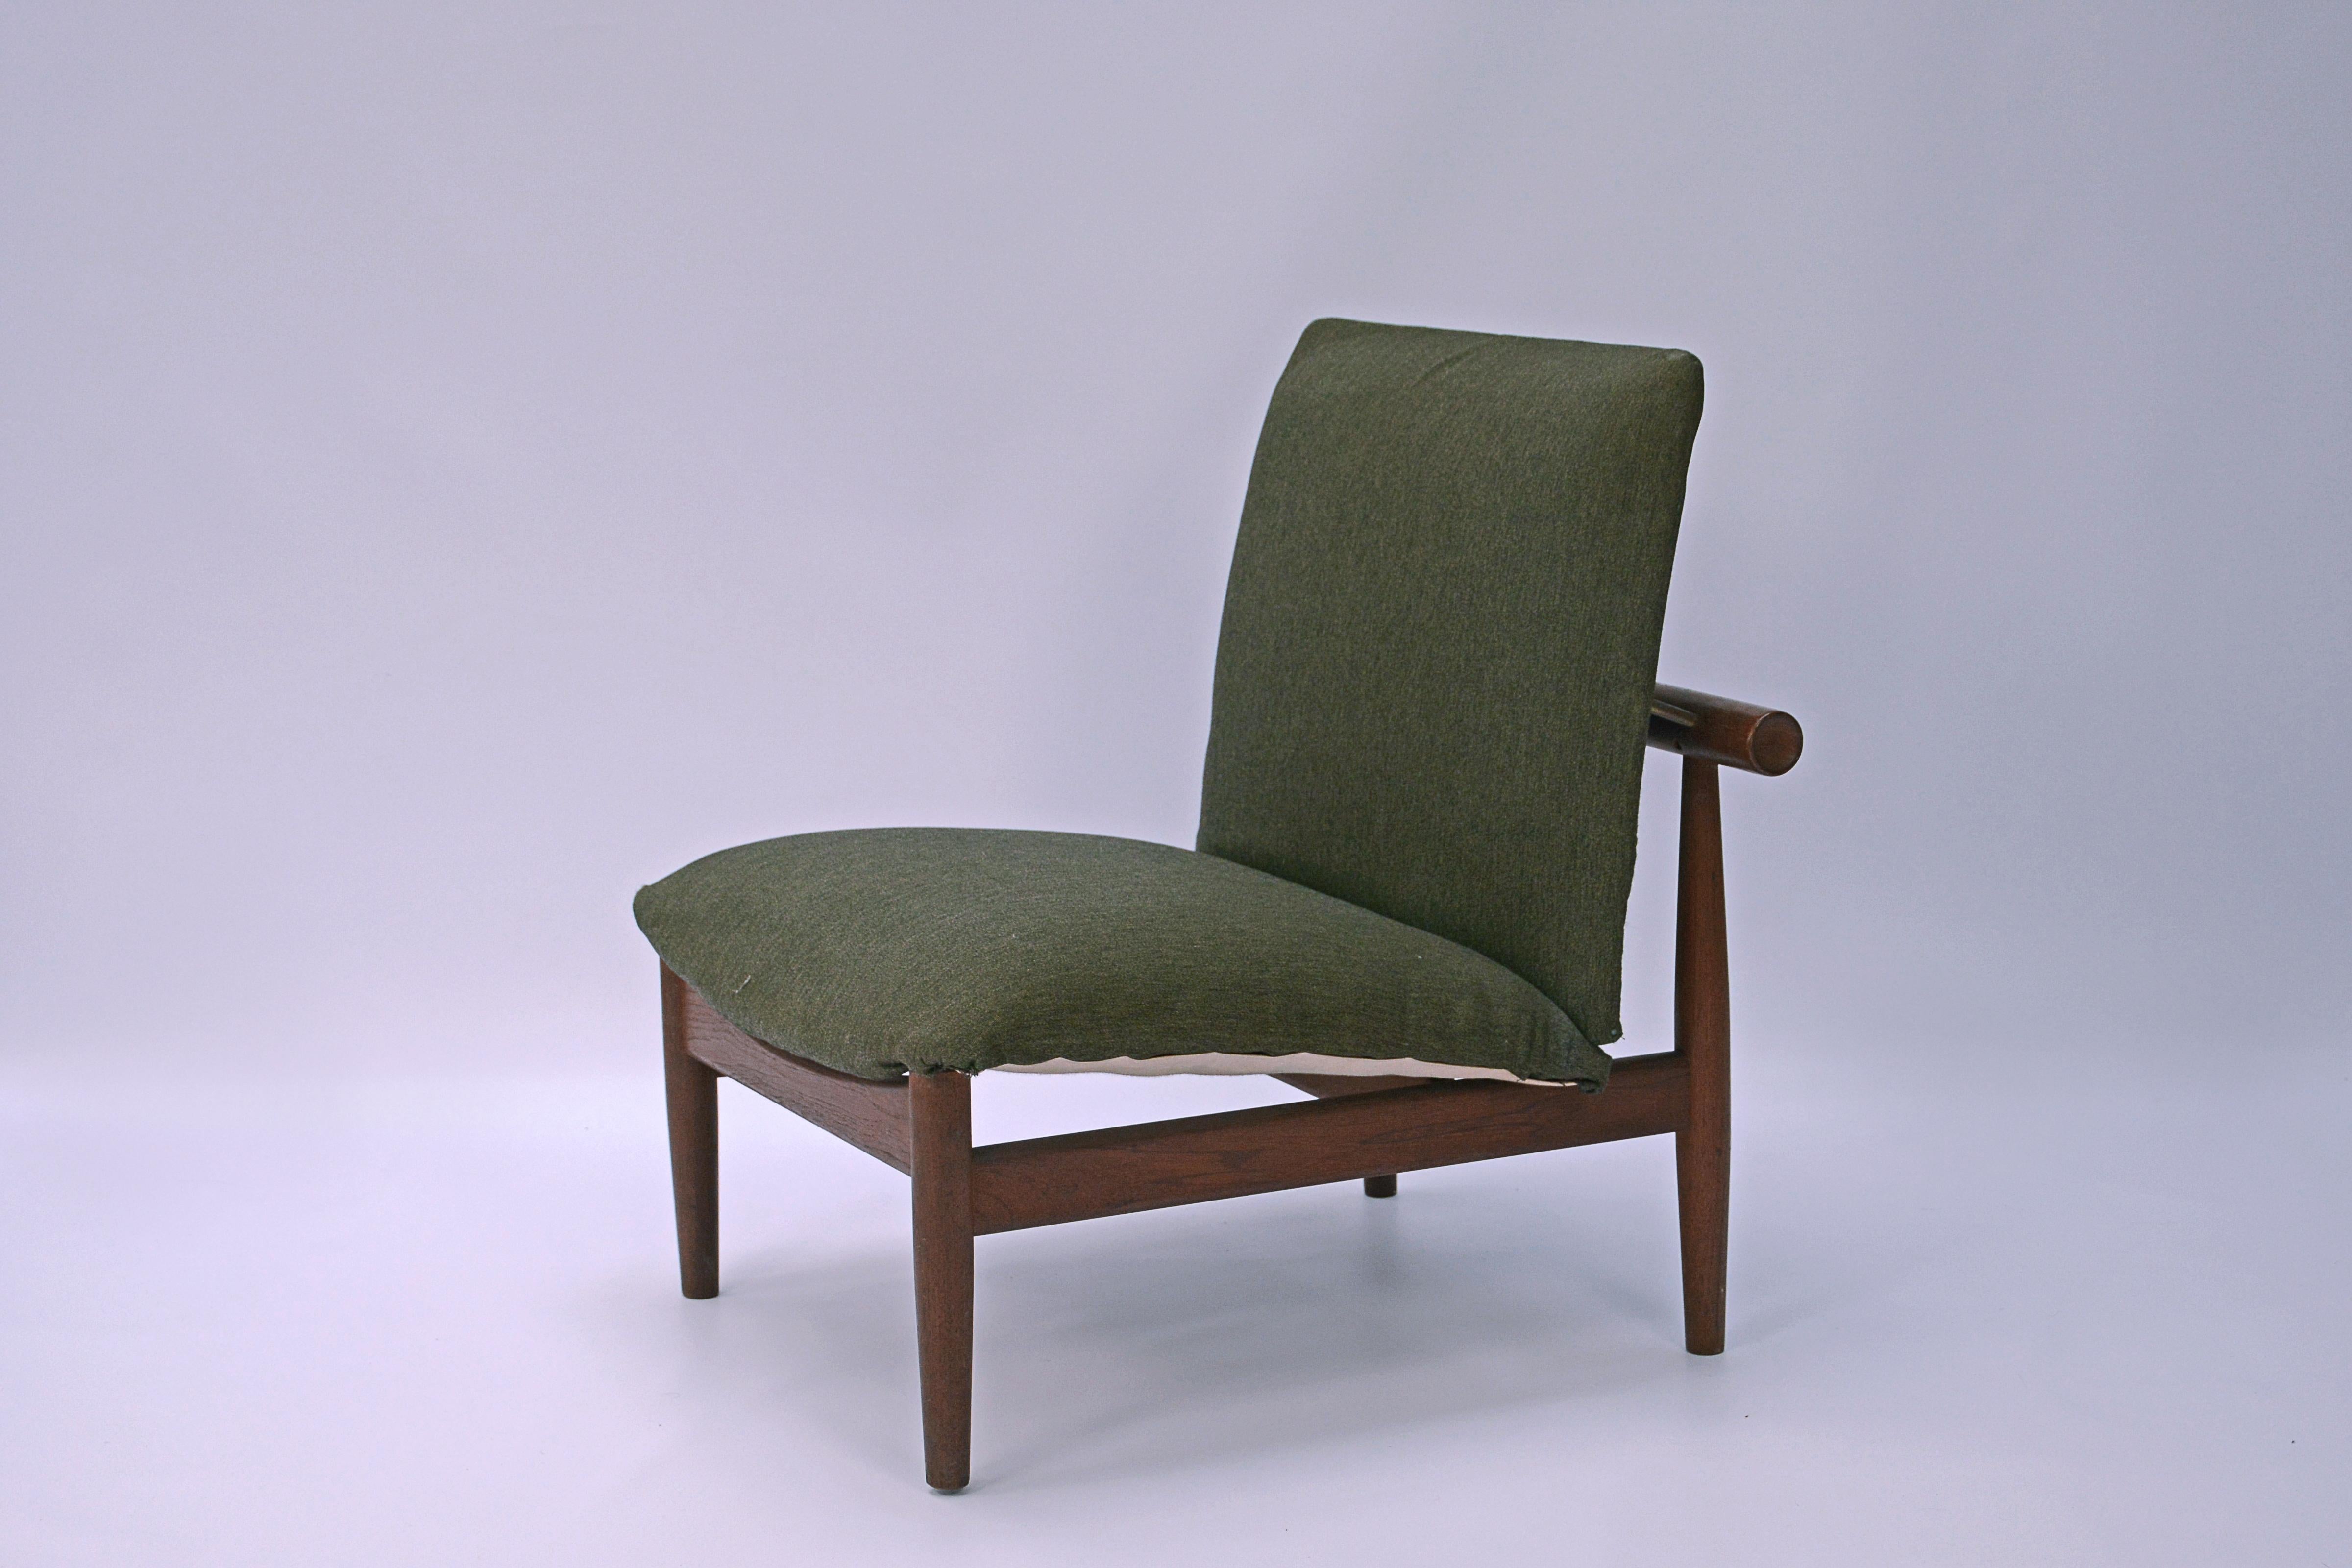 Sessel entworfen von Finn Juhl, aus massivem Teakholz und beide sind in ihrer ursprünglichen Polsterung. Finn Juhls Zusammenarbeit mit dem Möbelhersteller France & Son führte zu einer Reihe von Möbeln, die sich gut für die industrielle Produktion